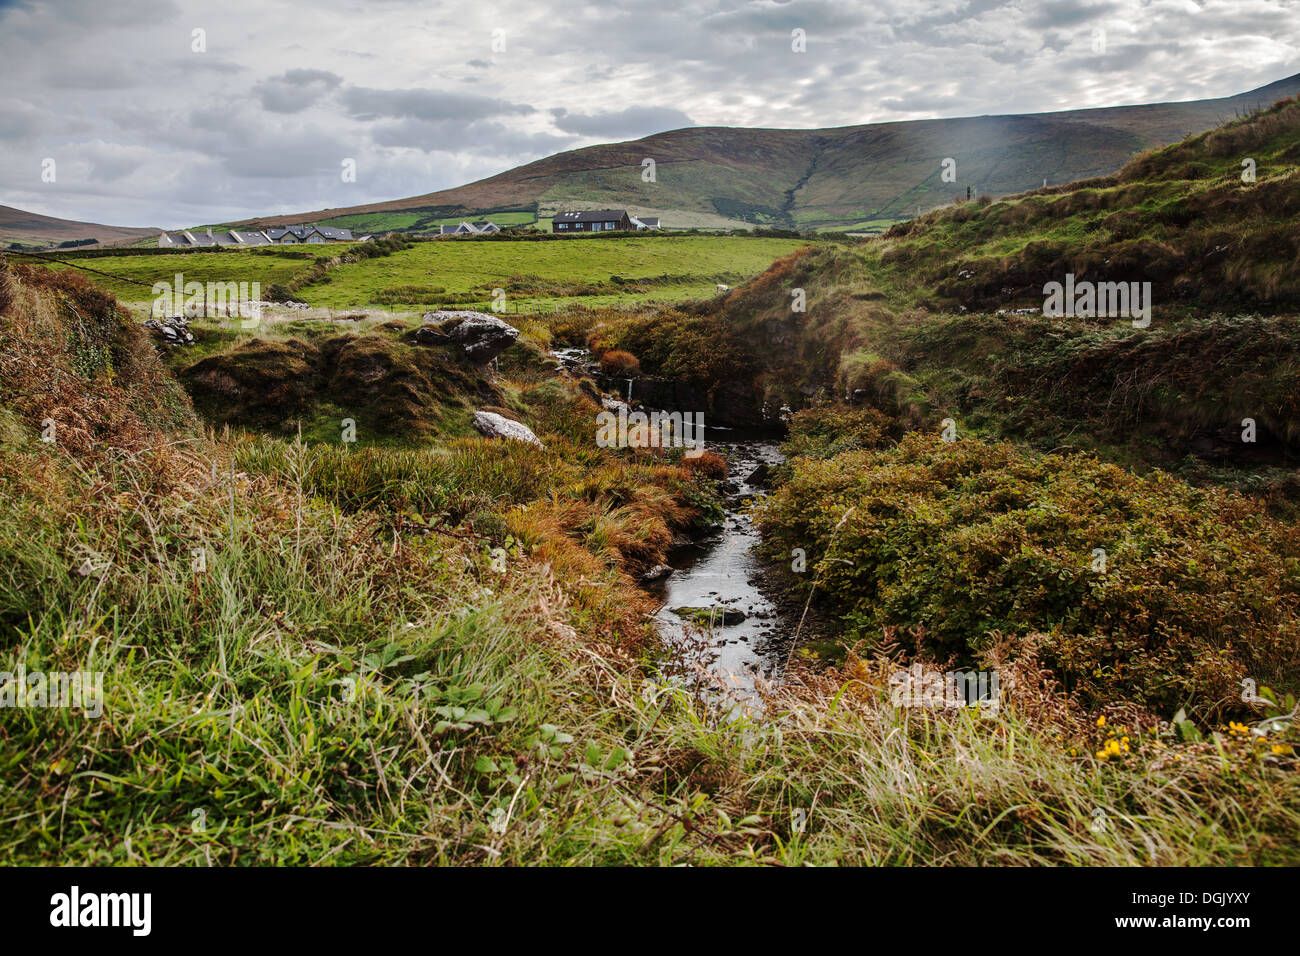 Flusso e colline del paesaggio della penisola di Dingle nr. A Dunquin Co. Kerry Irlanda Foto Stock